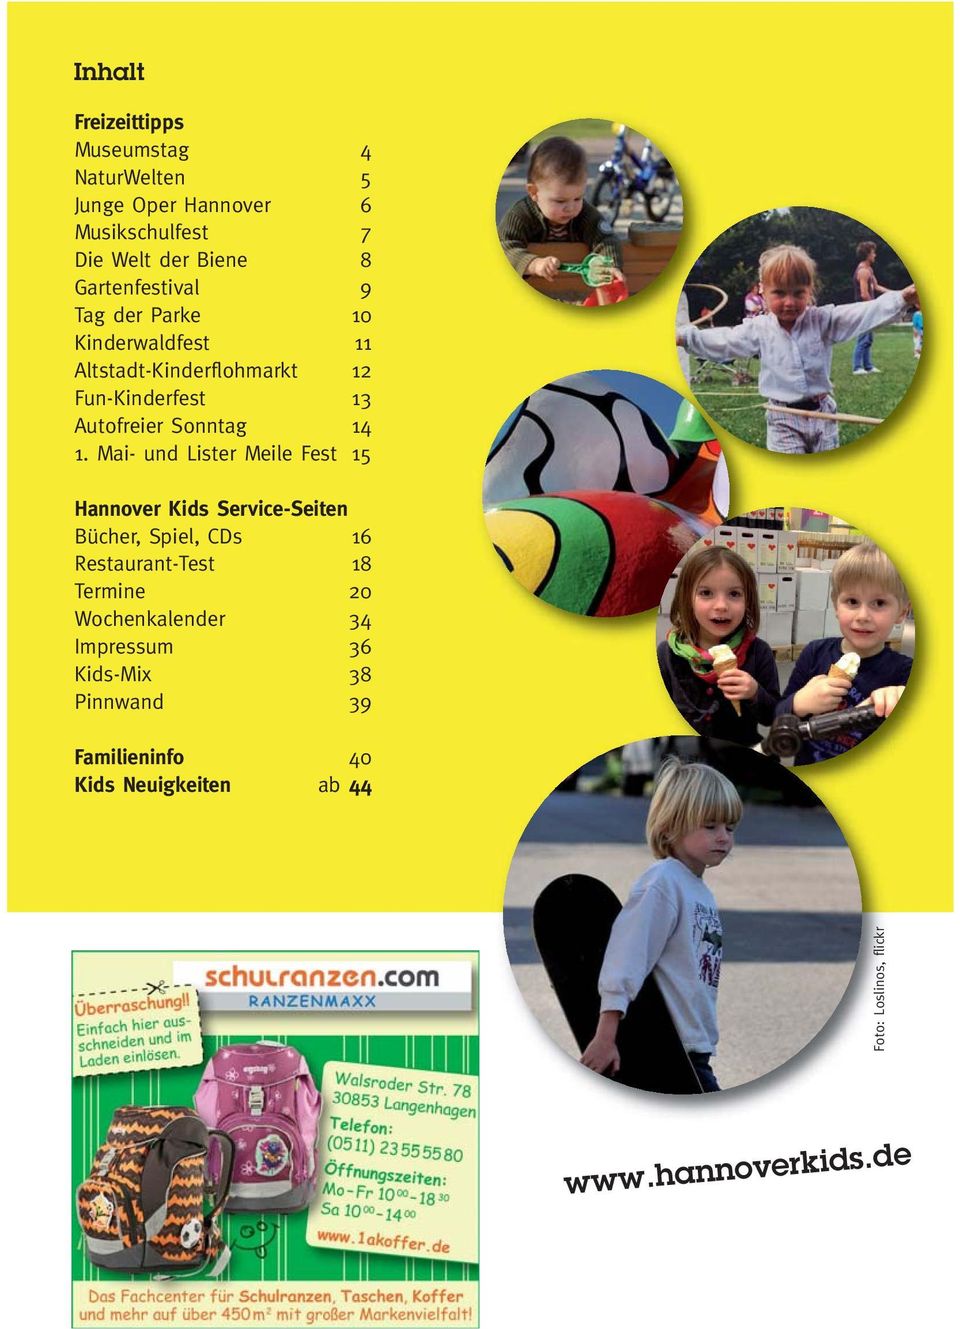 1. Mai- und Lister Meile Fest 15 Hannover Kids Service-Seiten Bücher, Spiel, CDs 16 Restaurant-Test 18 Termine 20